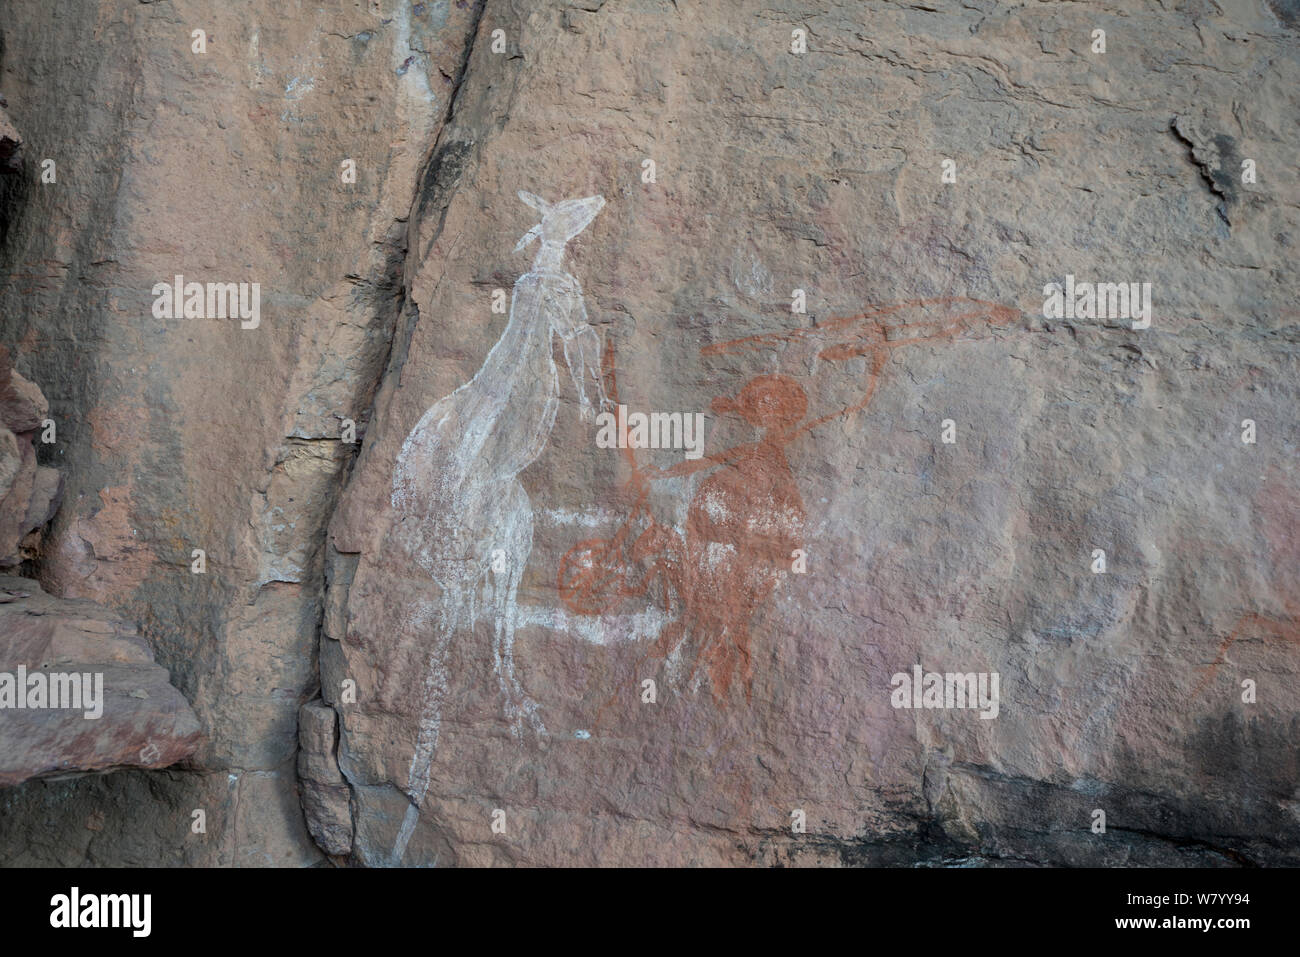 Arte rupestre degli Aborigeni di canguro e cacciatore, dal Parco Nazionale Kakadu, Territorio del Nord, l'Australia. Dicembre 2012. Foto Stock